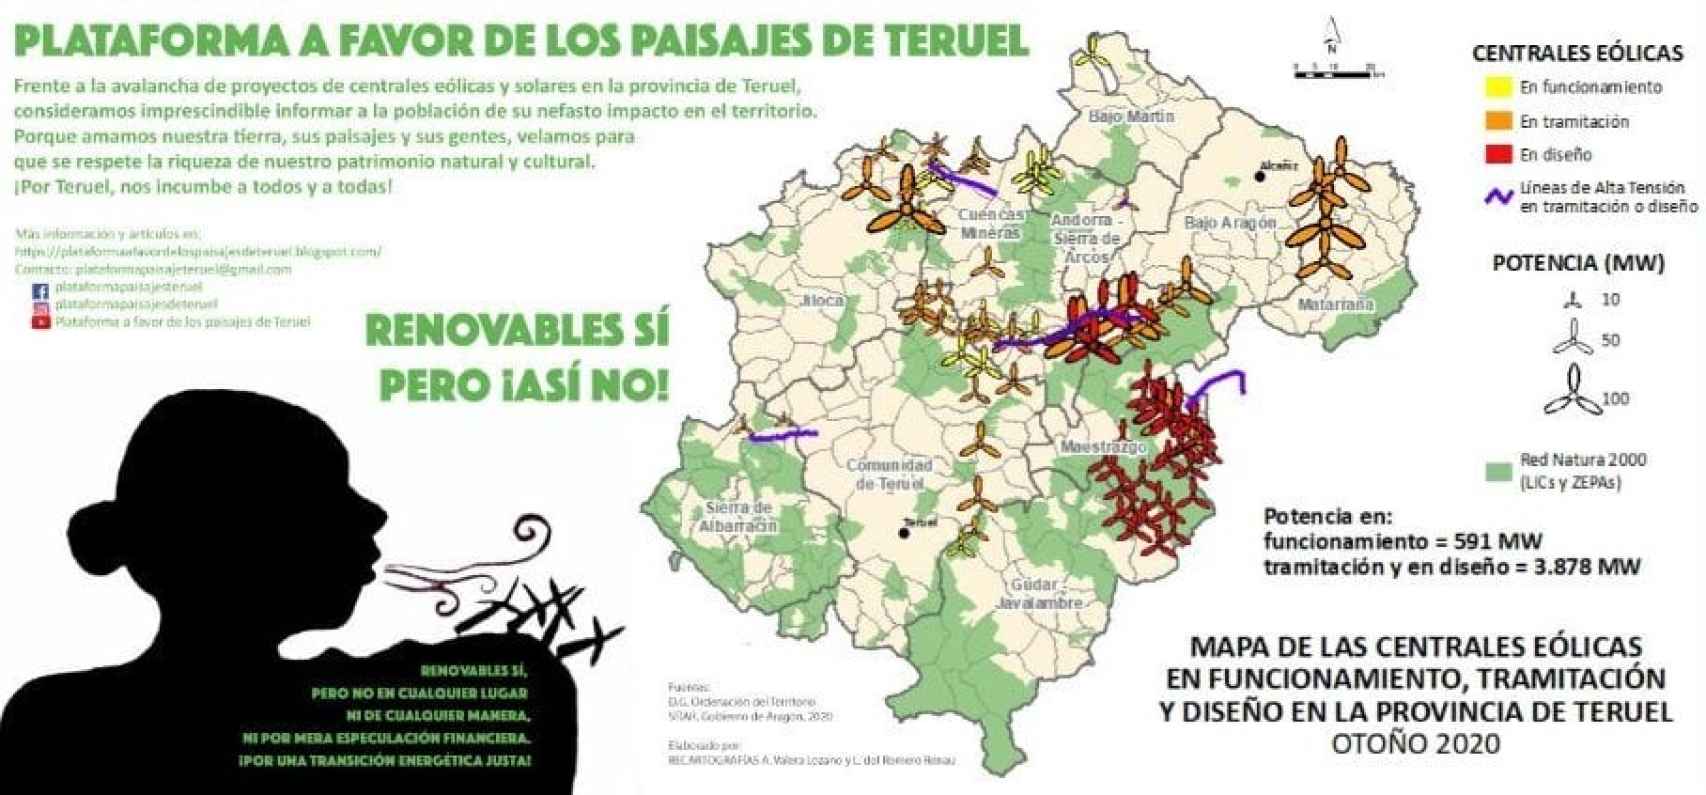 Infografía de la Plataforma a Favor de los Paisajes de Teruel sobre los proyectos de Forestalia. EE